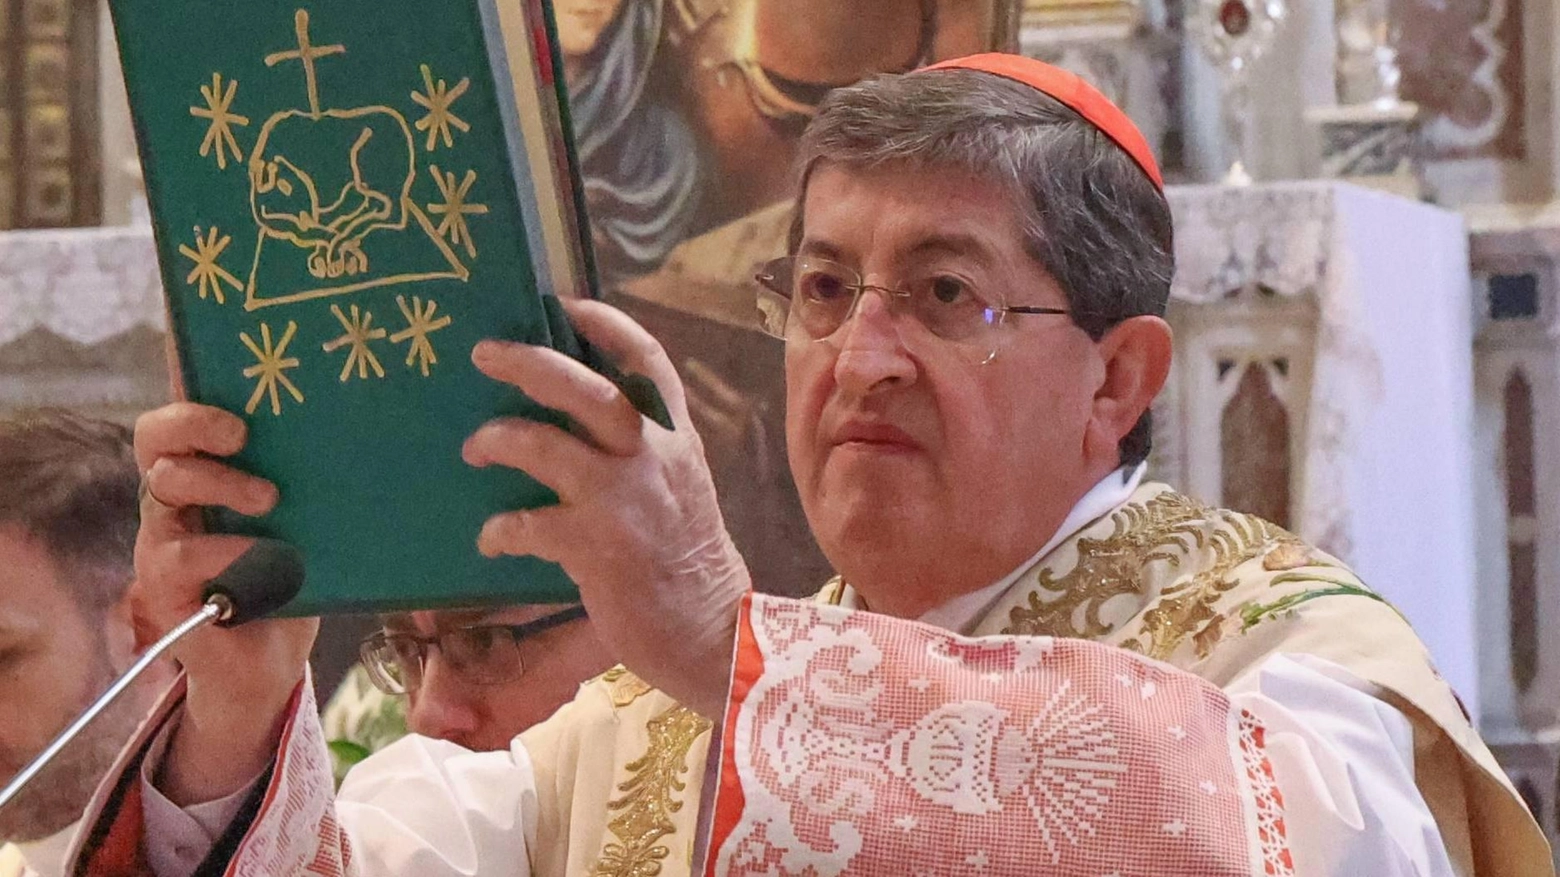 Sacerdoti e fedeli hanno reso omaggio all’arcivescovo di Firenze "I vescovi passano, il Signore resta ed è lui l’unico vero nostro Pastore" .